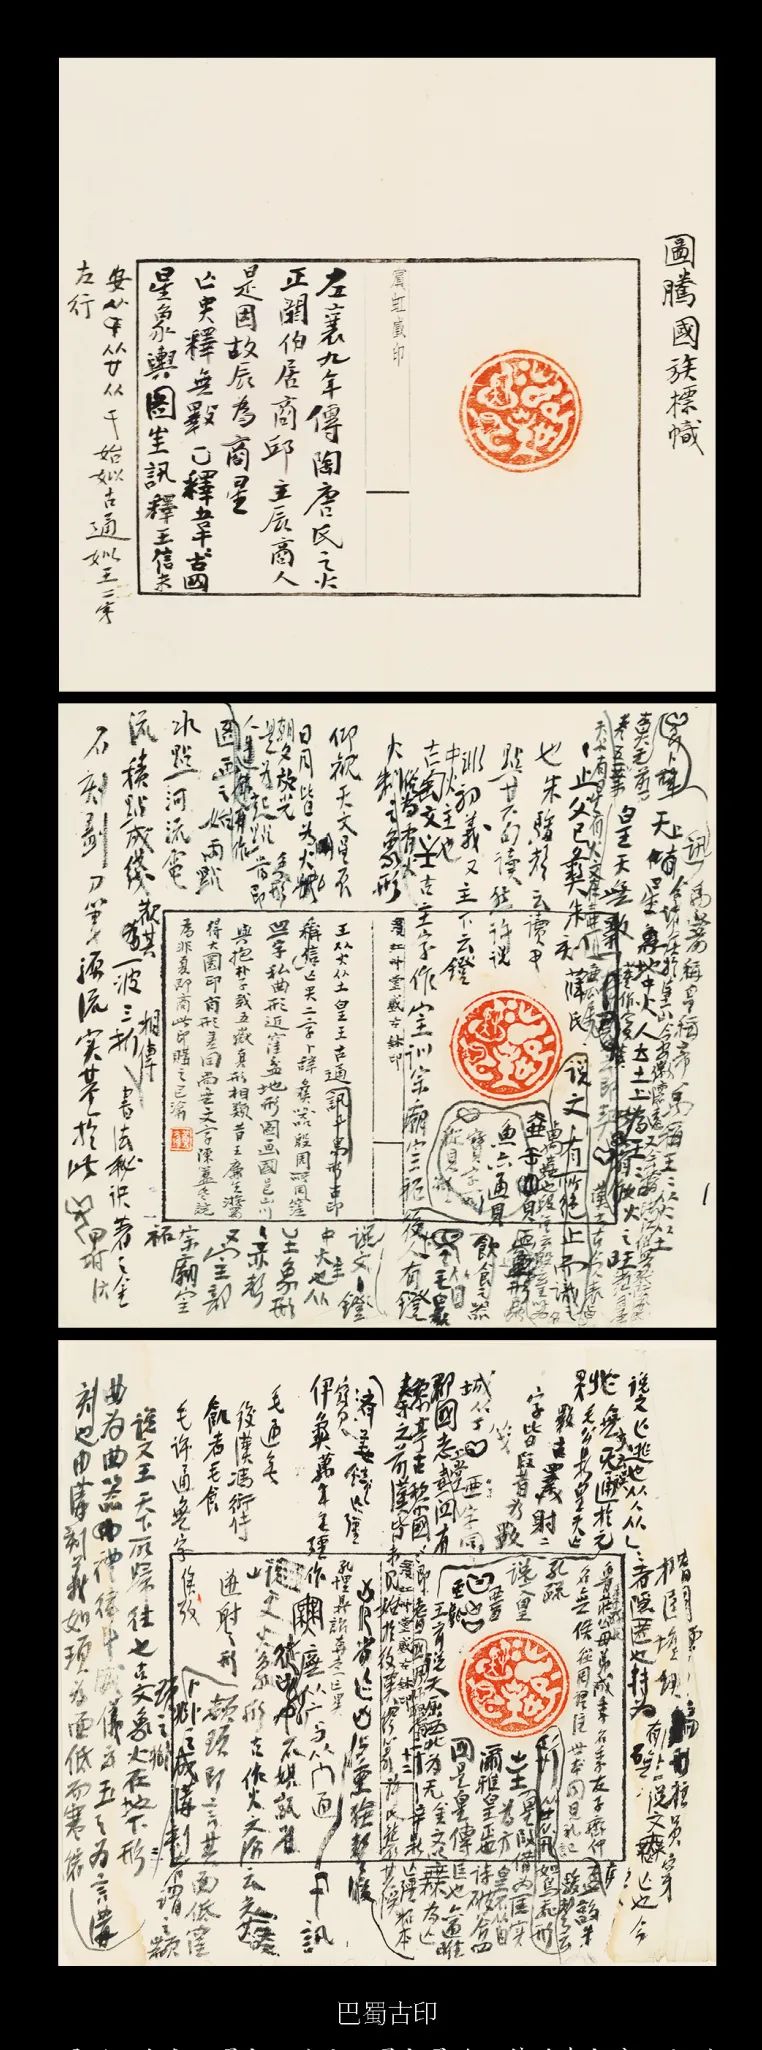 国内最具学术与艺术价值的玺印收藏集合体之一《古物影——黄宾虹古玺印收藏集萃》(图87)